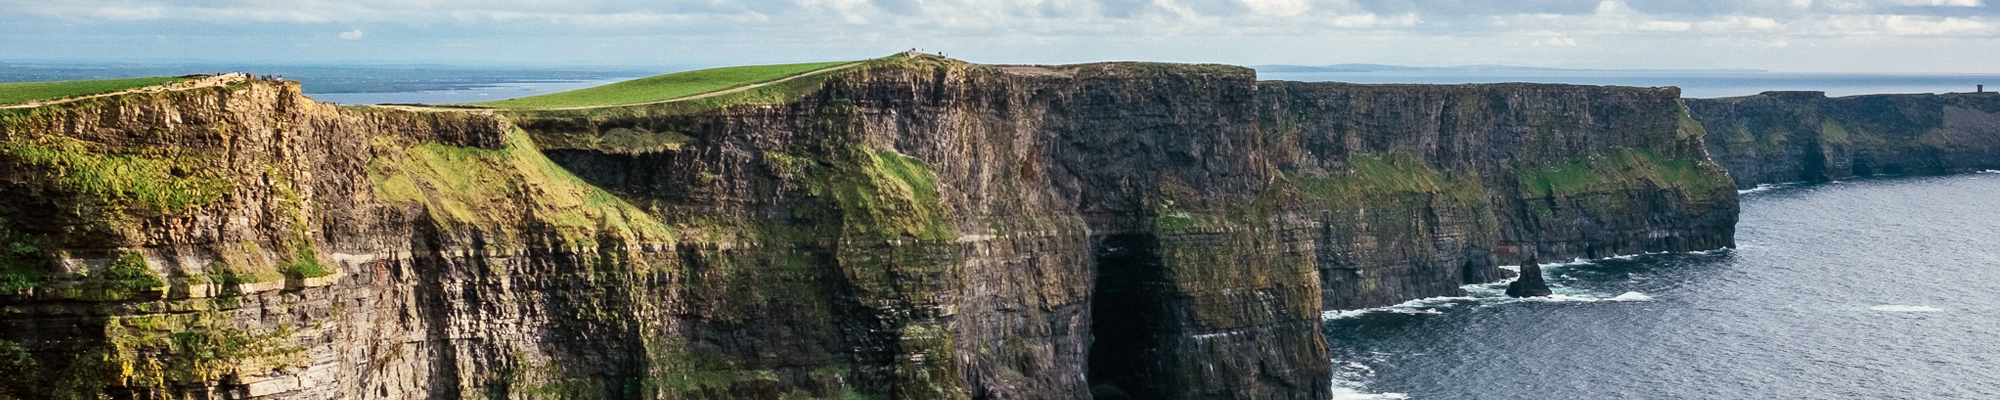 Cliff of Moher in Ireland